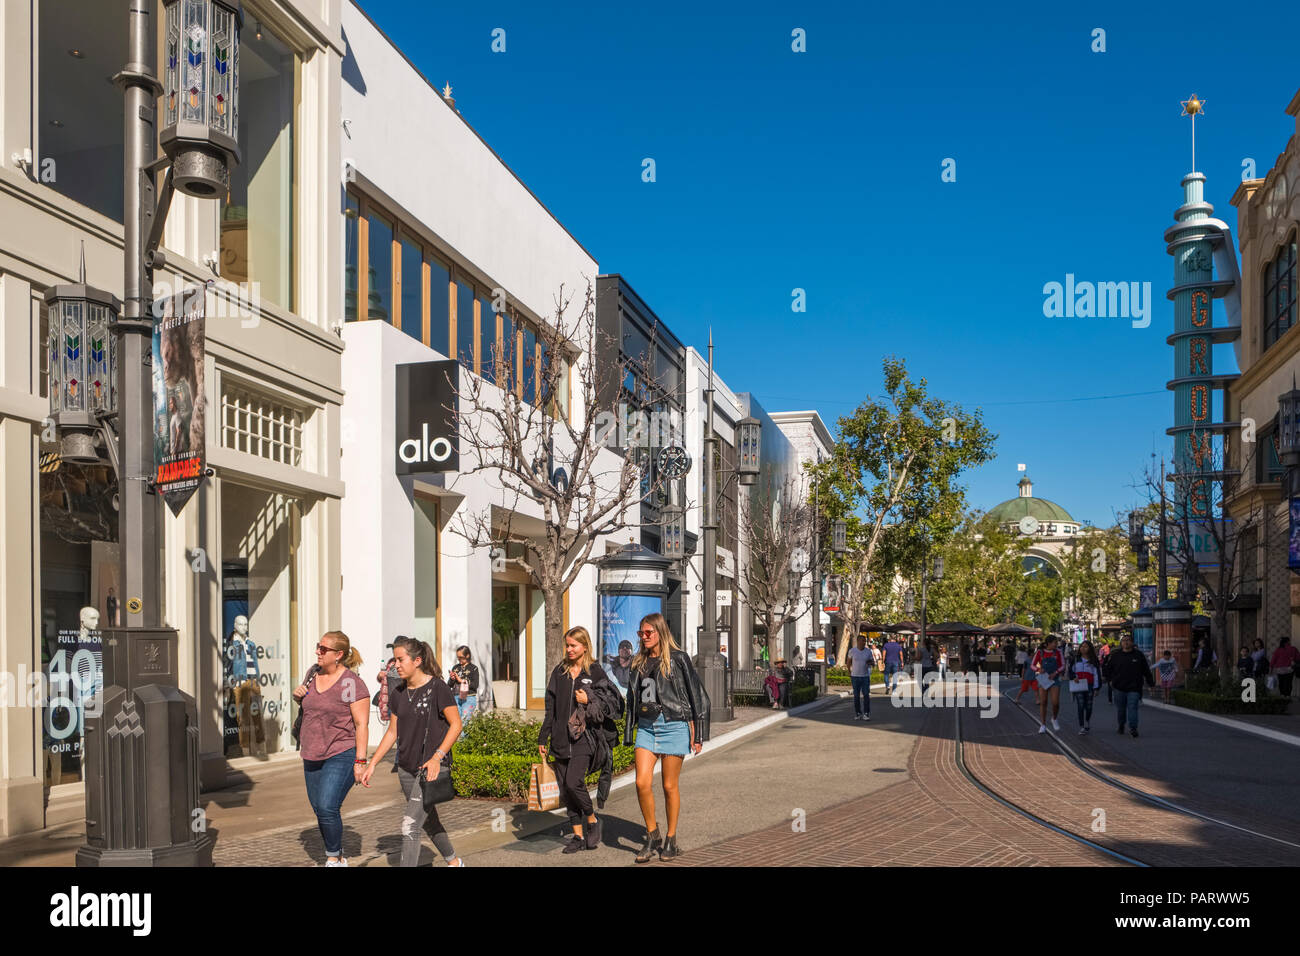 Geschäfte und Läden an der hochwertigen Shopping Mall, die Nut am Bauernmarkt, Los Angeles, Kalifornien, USA Stockfoto